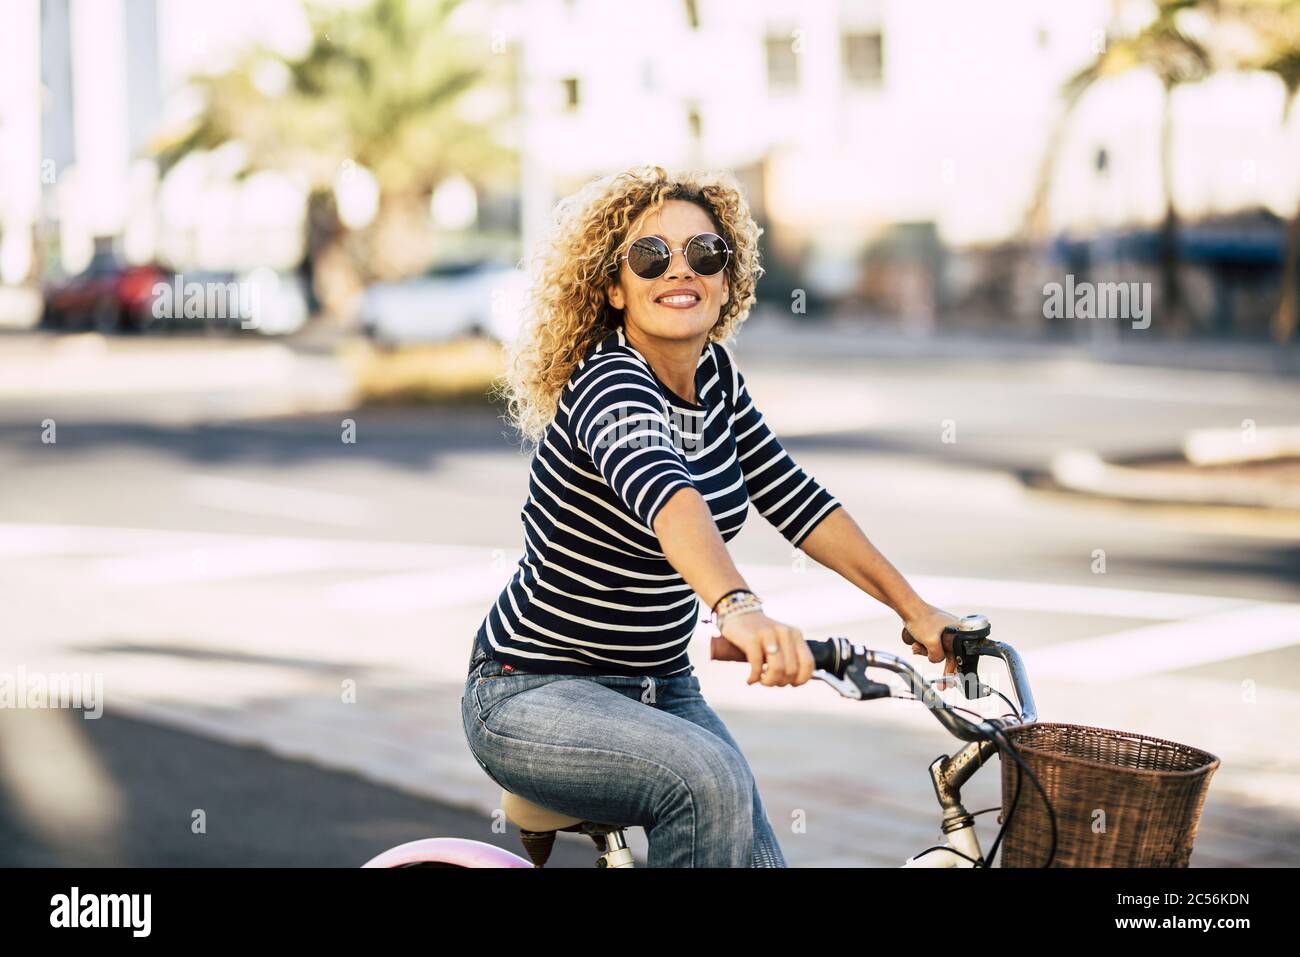 Schöne und fröhliche Erwachsene junge Frau genießen Fahrradfahren in sonnigen städtischen Freizeitangeboten im Freien in der Stadt - fröhliches Menschenporträt - trendige weibliche Person o Stockfoto